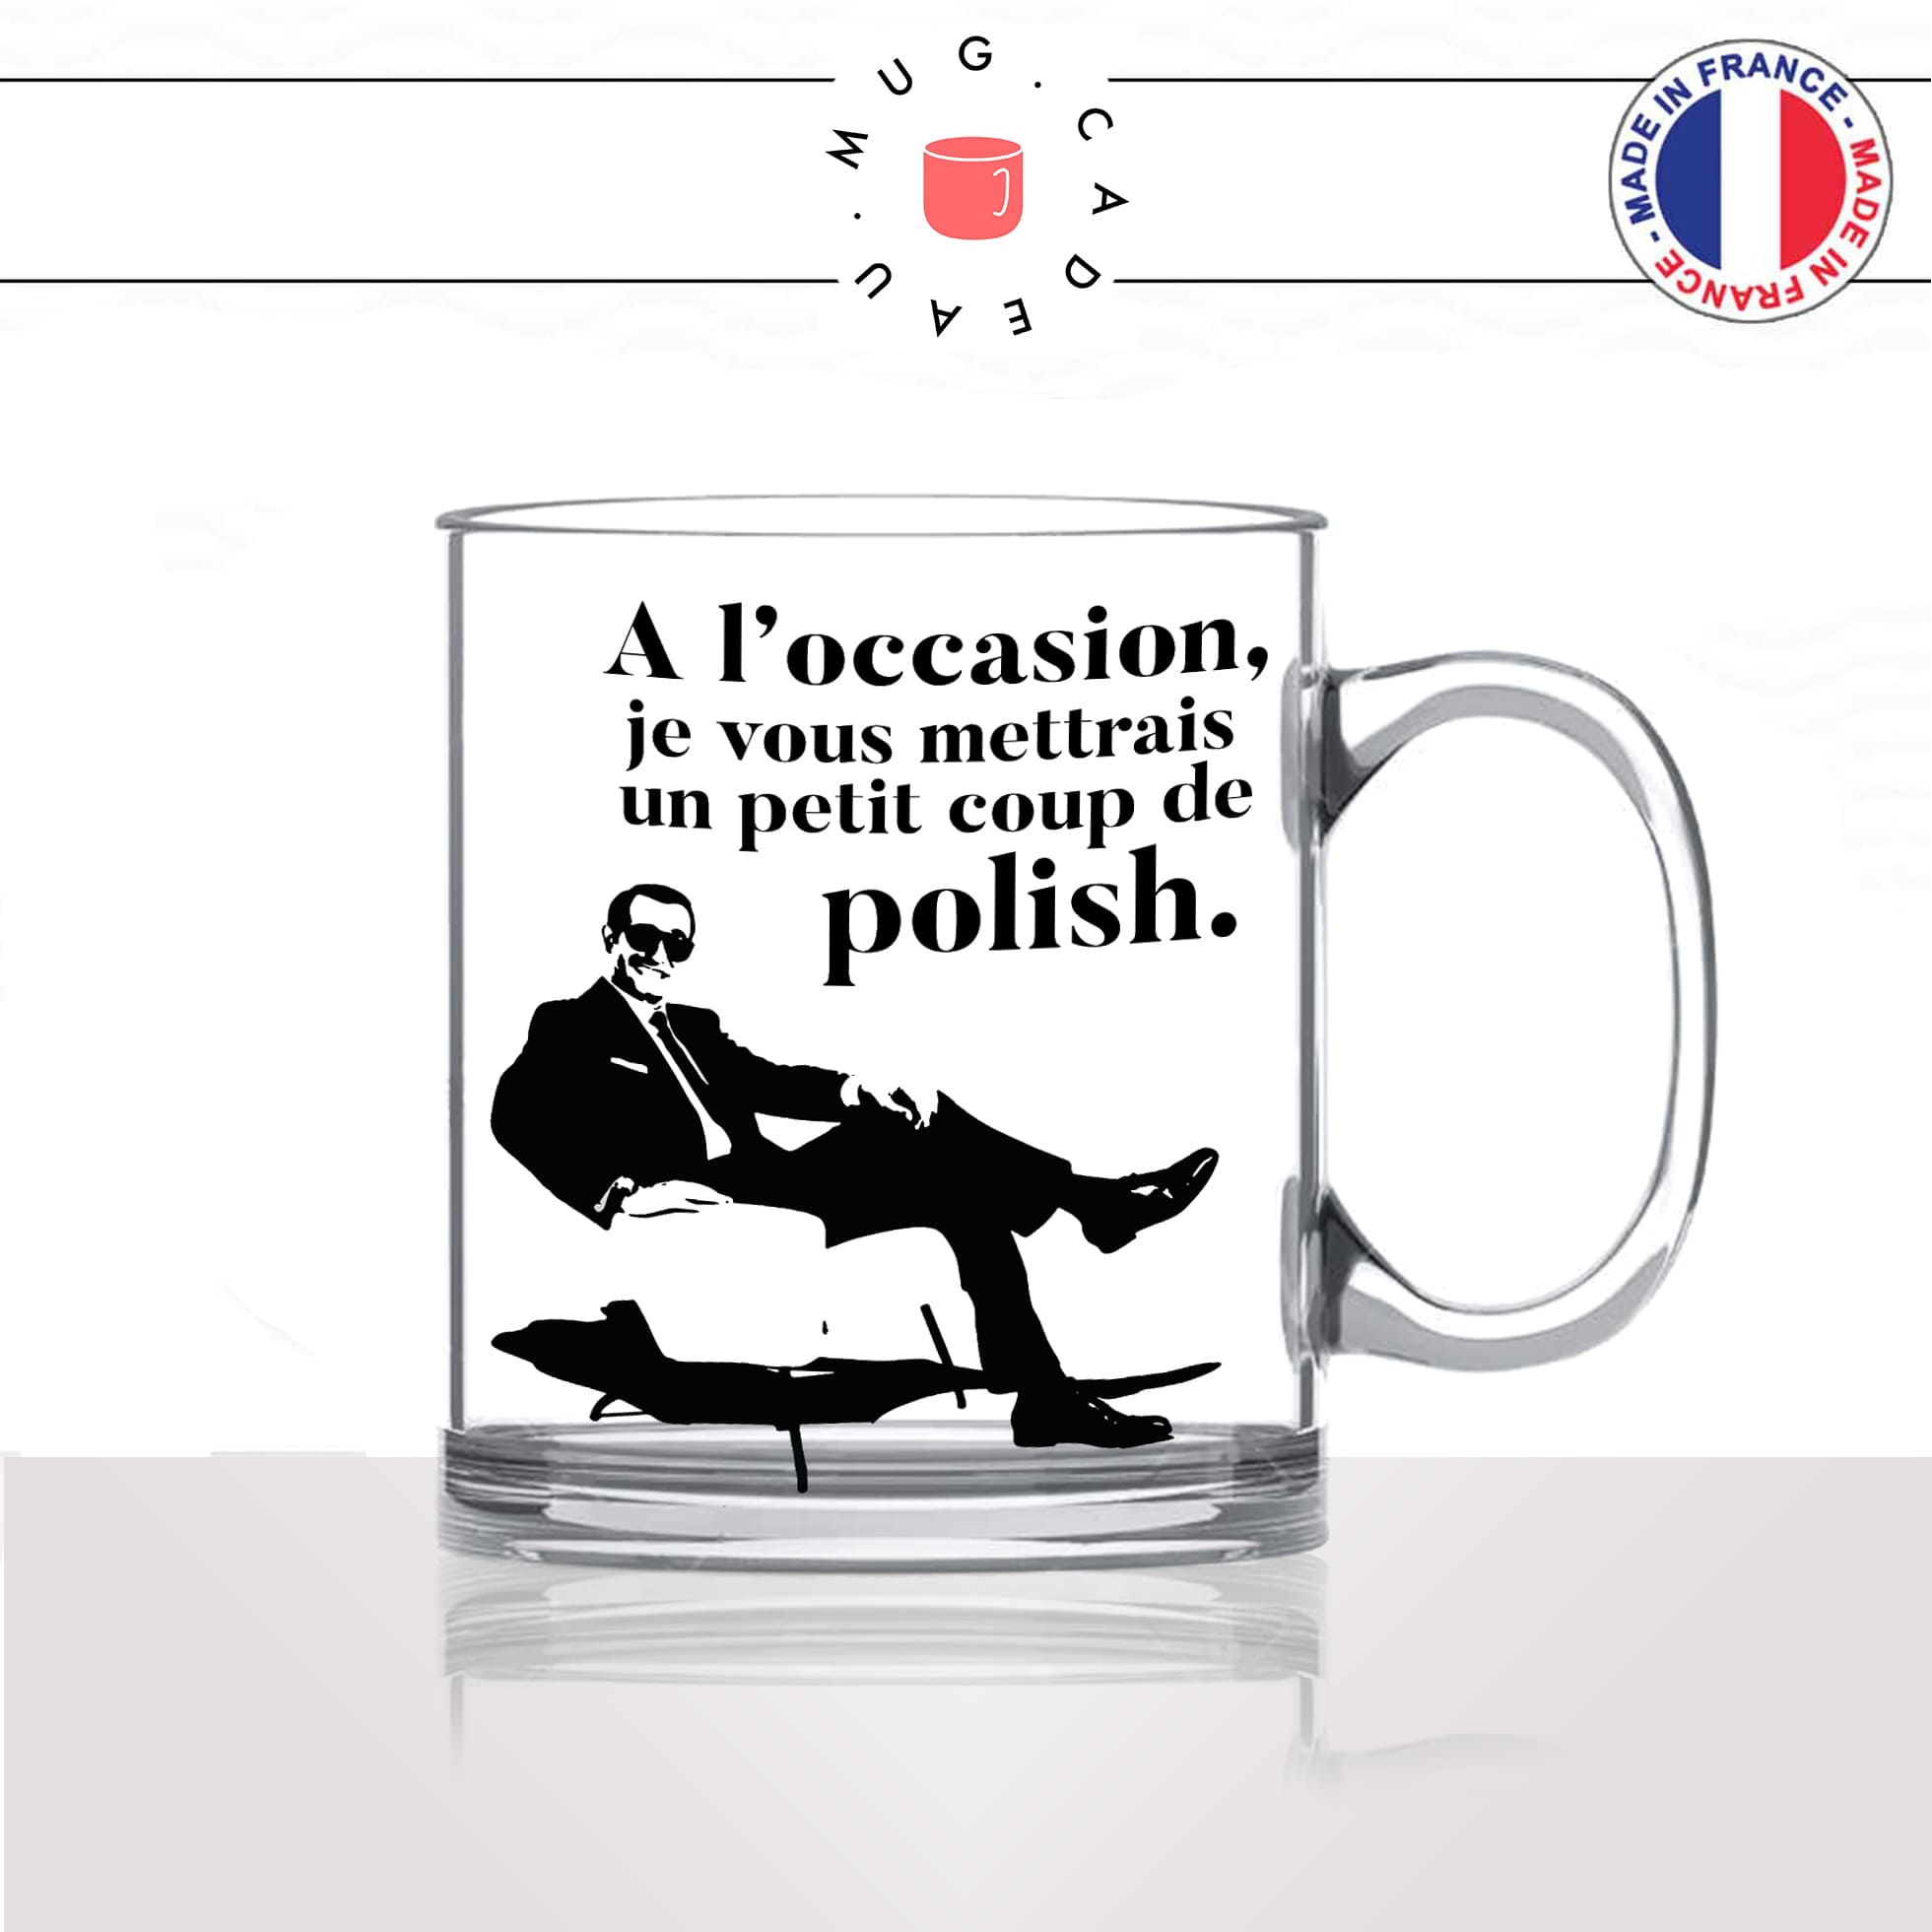 mug-tasse-en-verre-transparent-glass-film-francais-oss117-coup-de-polish-drague-collegue-humour-idée-cadeau-fun-cool-café-thé2